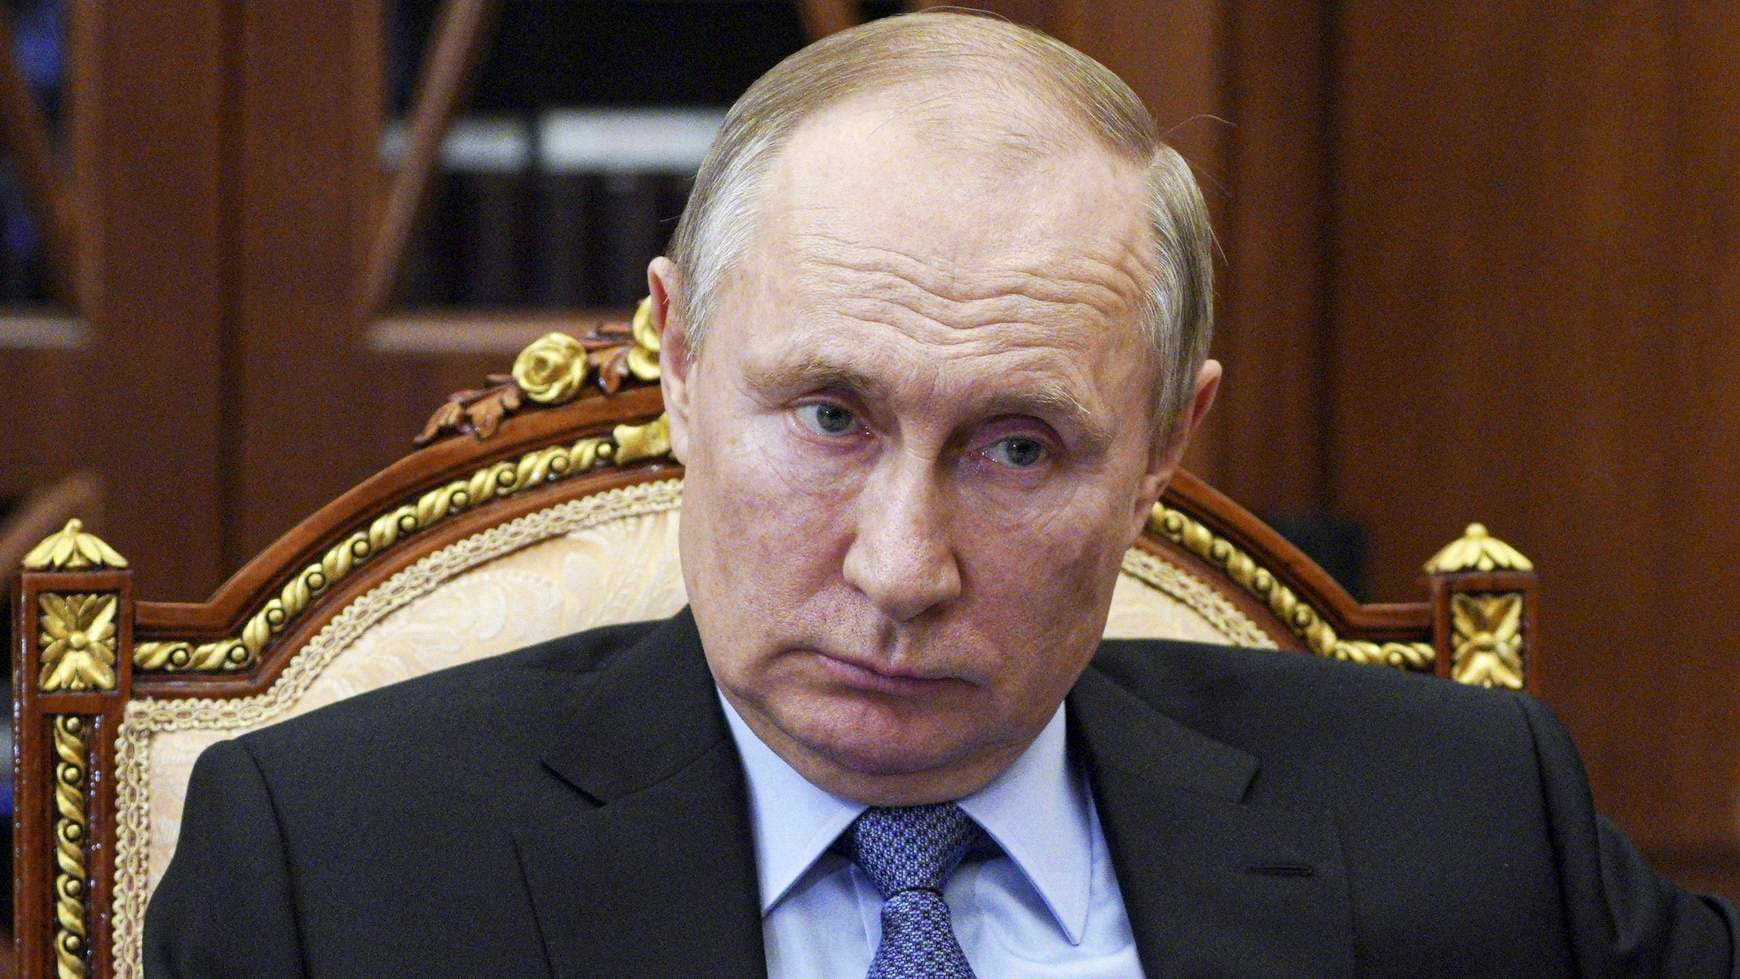 Moszkva szállít élelmet, ha feloldják a szankciókat - mondta Putyin Erdogannak